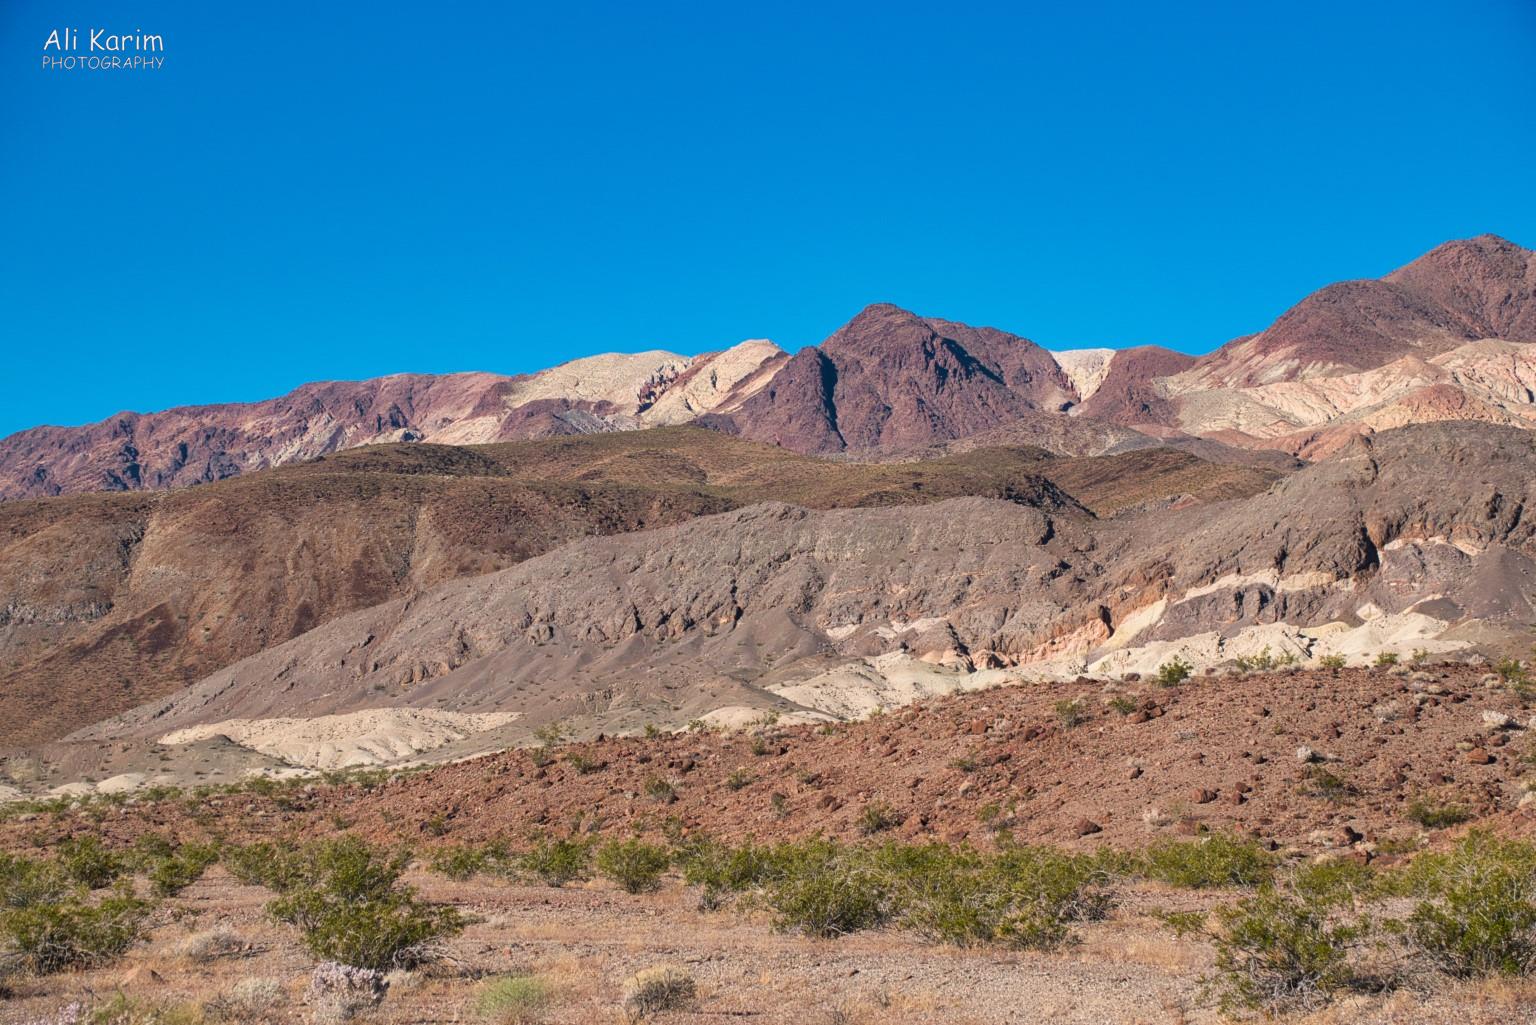 Death Valley National Park, June 2020, Interesting colorful landscape